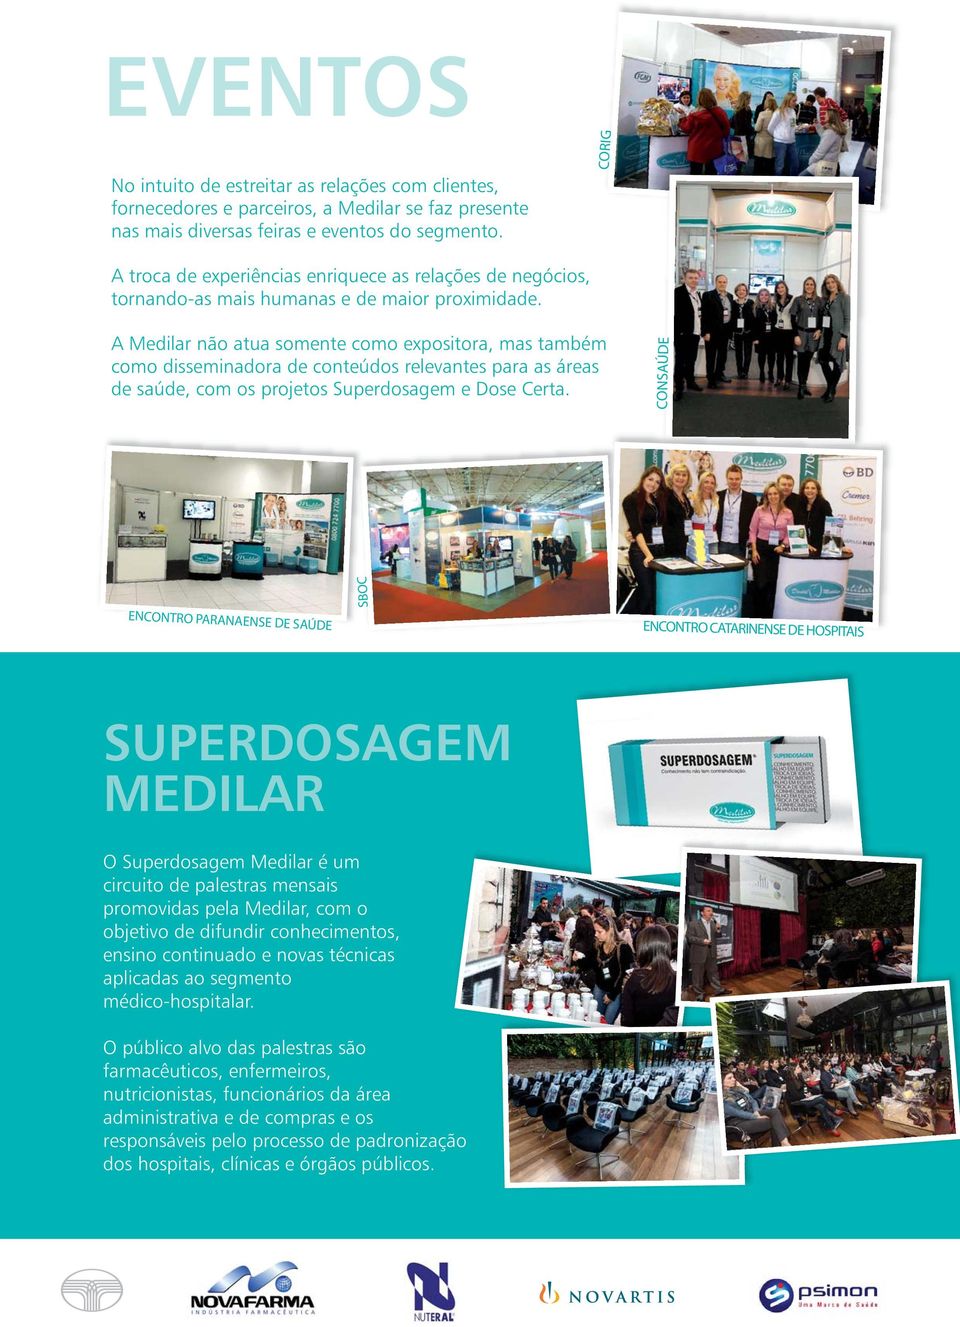 A Medilar não atua somente como expositora, mas também como disseminadora de conteúdos relevantes para as áreas de saúde, com os projetos Superdosagem e Dose Certa.